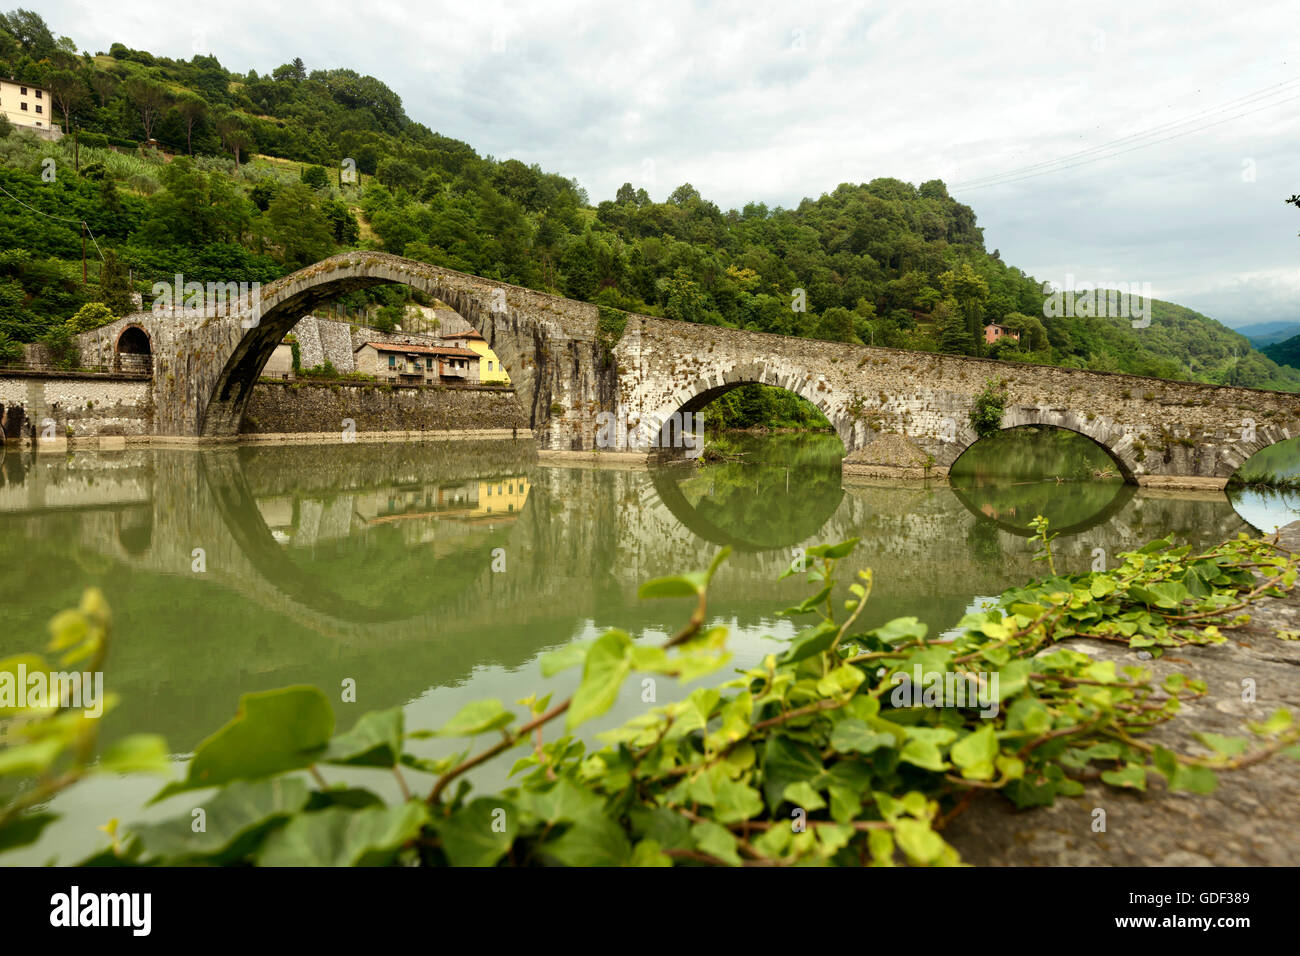 Borgo a Mozzan, Ponte del Diavolo, Devilsbridge, Europa, Italia, Toscana Foto de stock